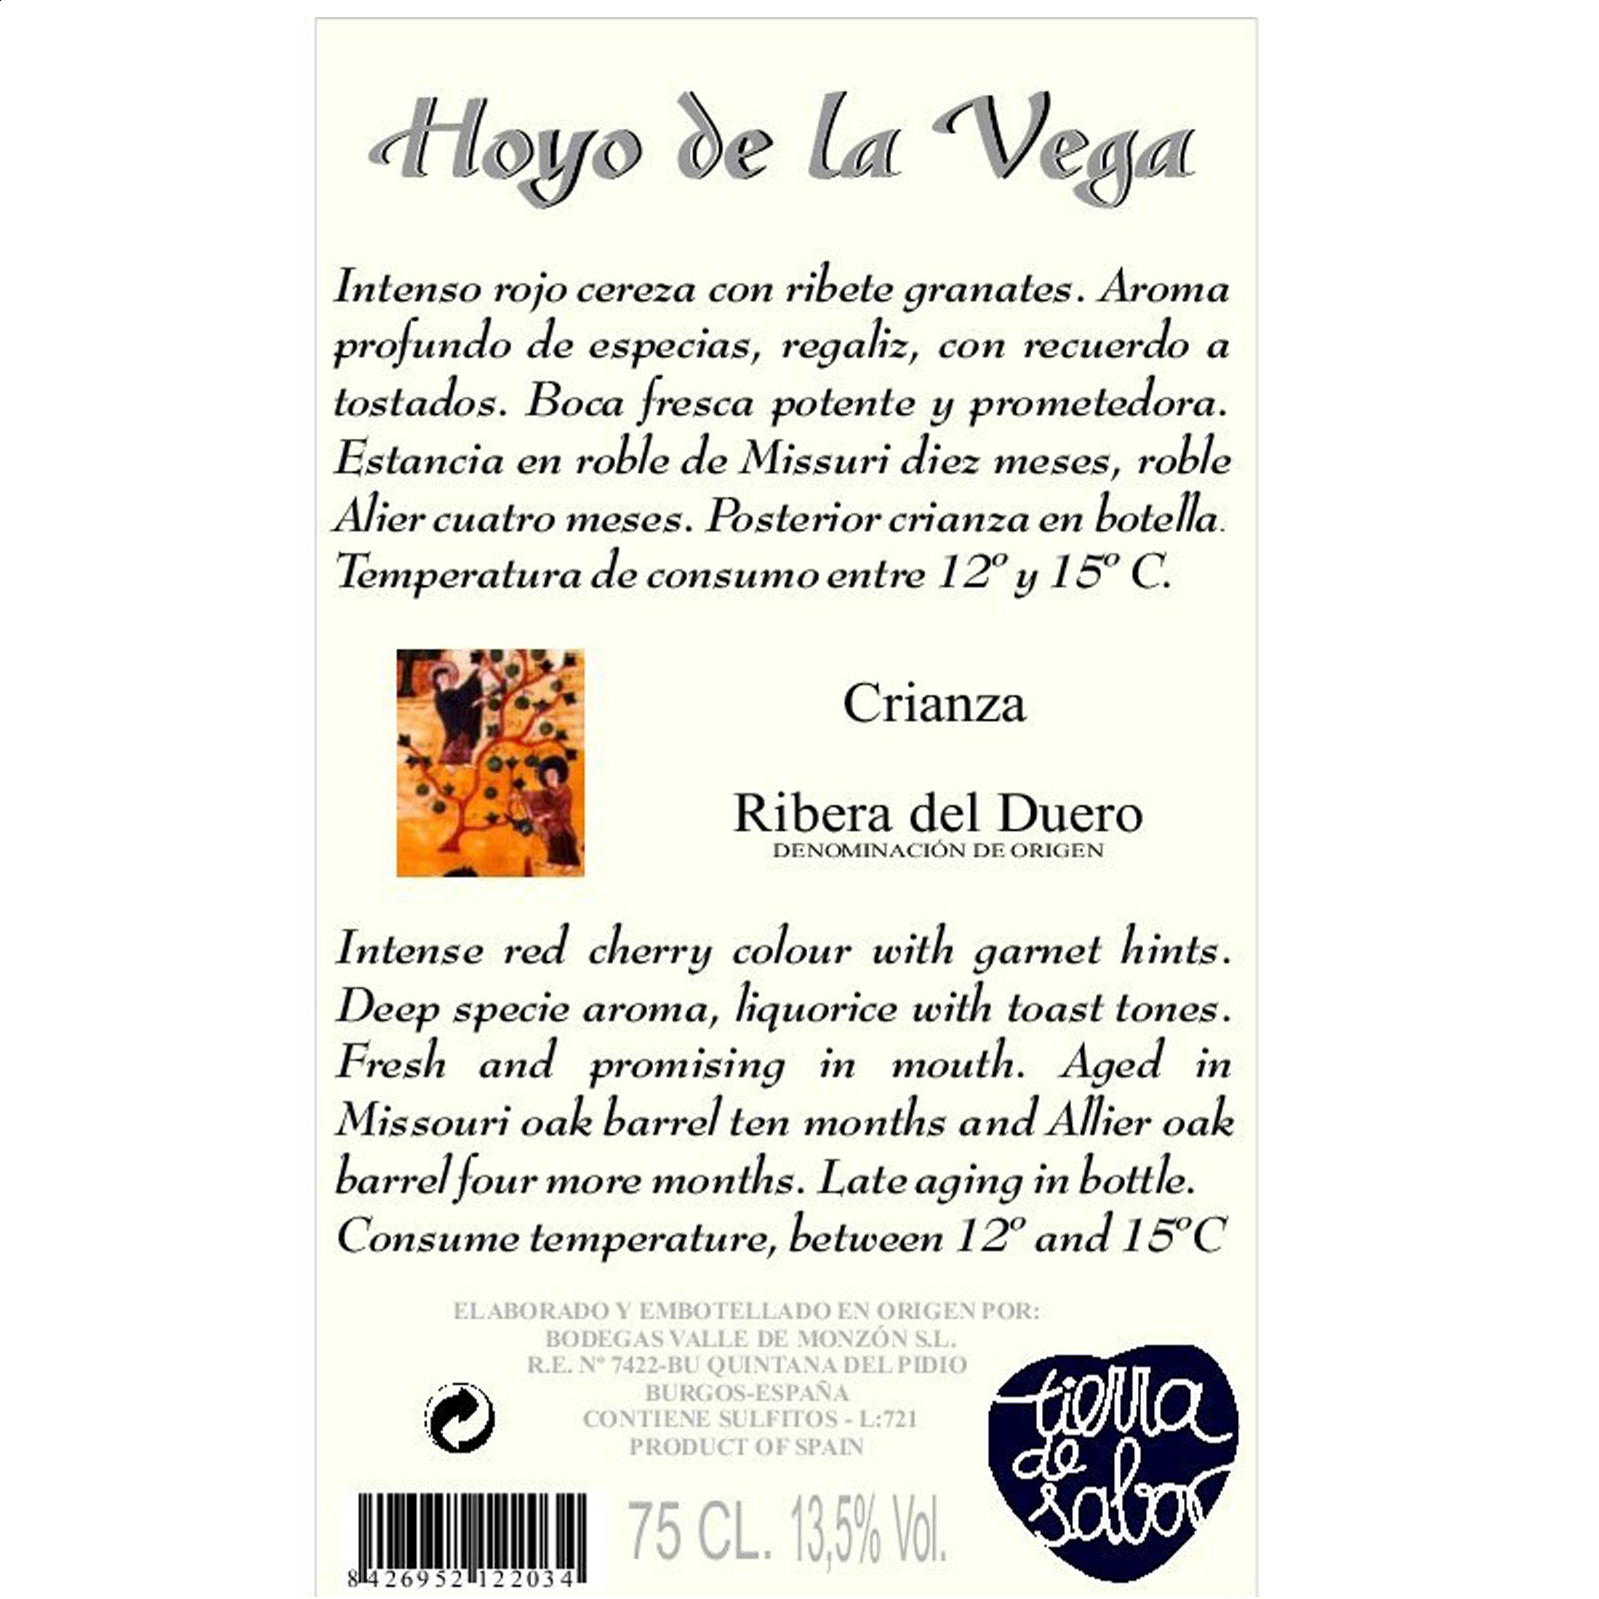 Bodegas Valle de Monzón - Vino tinto Crianza Hoyo de la Vega D.O. Ribera Del Duero 75cl, 6uds